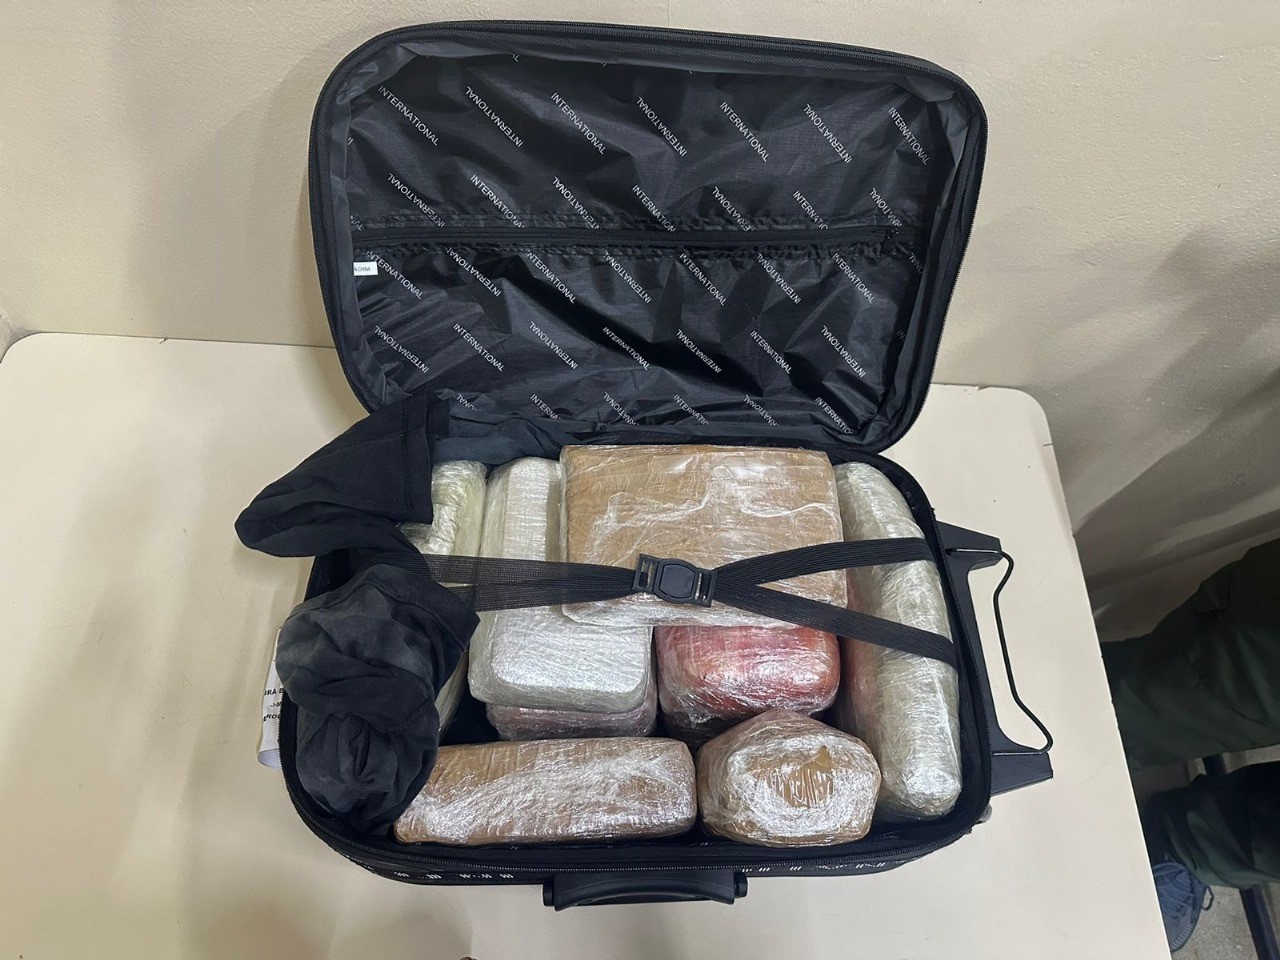 Drogas são apreendidas dentro de mala no aeroporto de São Gabriel da Cachoeira, interior do AM